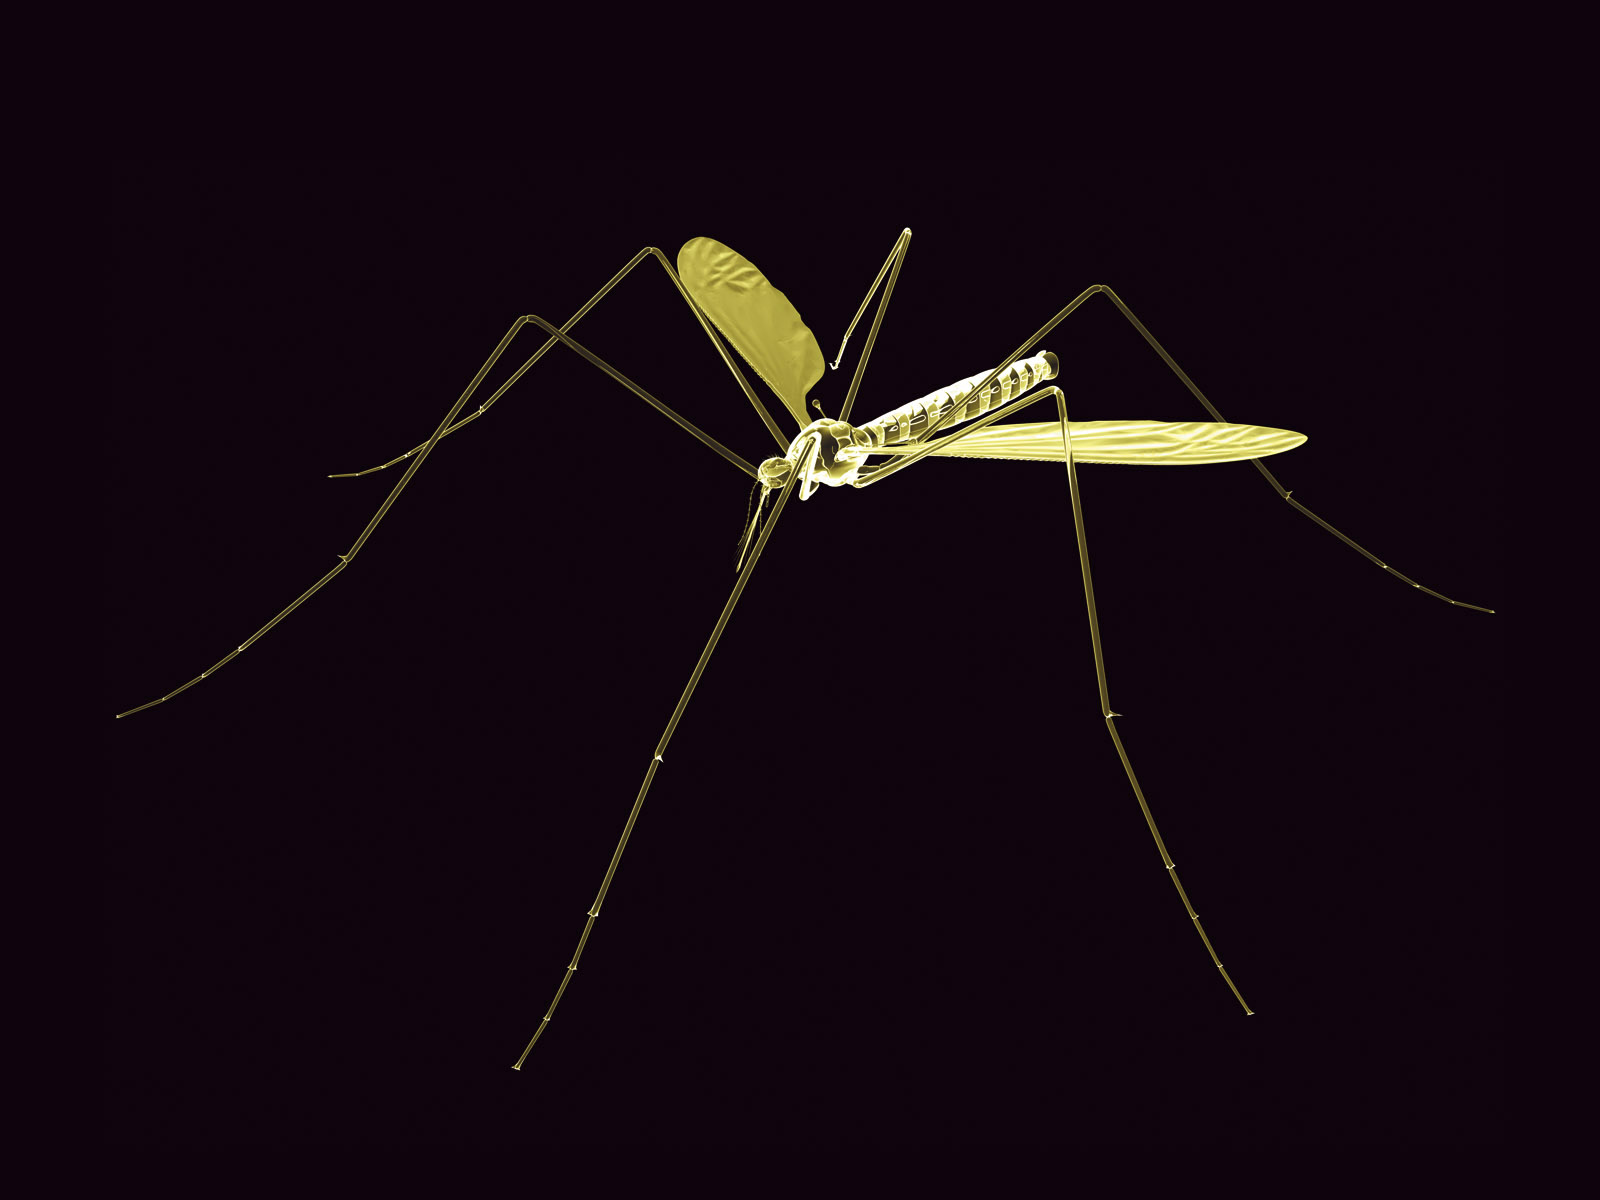 Neon Mosquito Win 7 3d Desktop Wallpaper - Mosquito - HD Wallpaper 